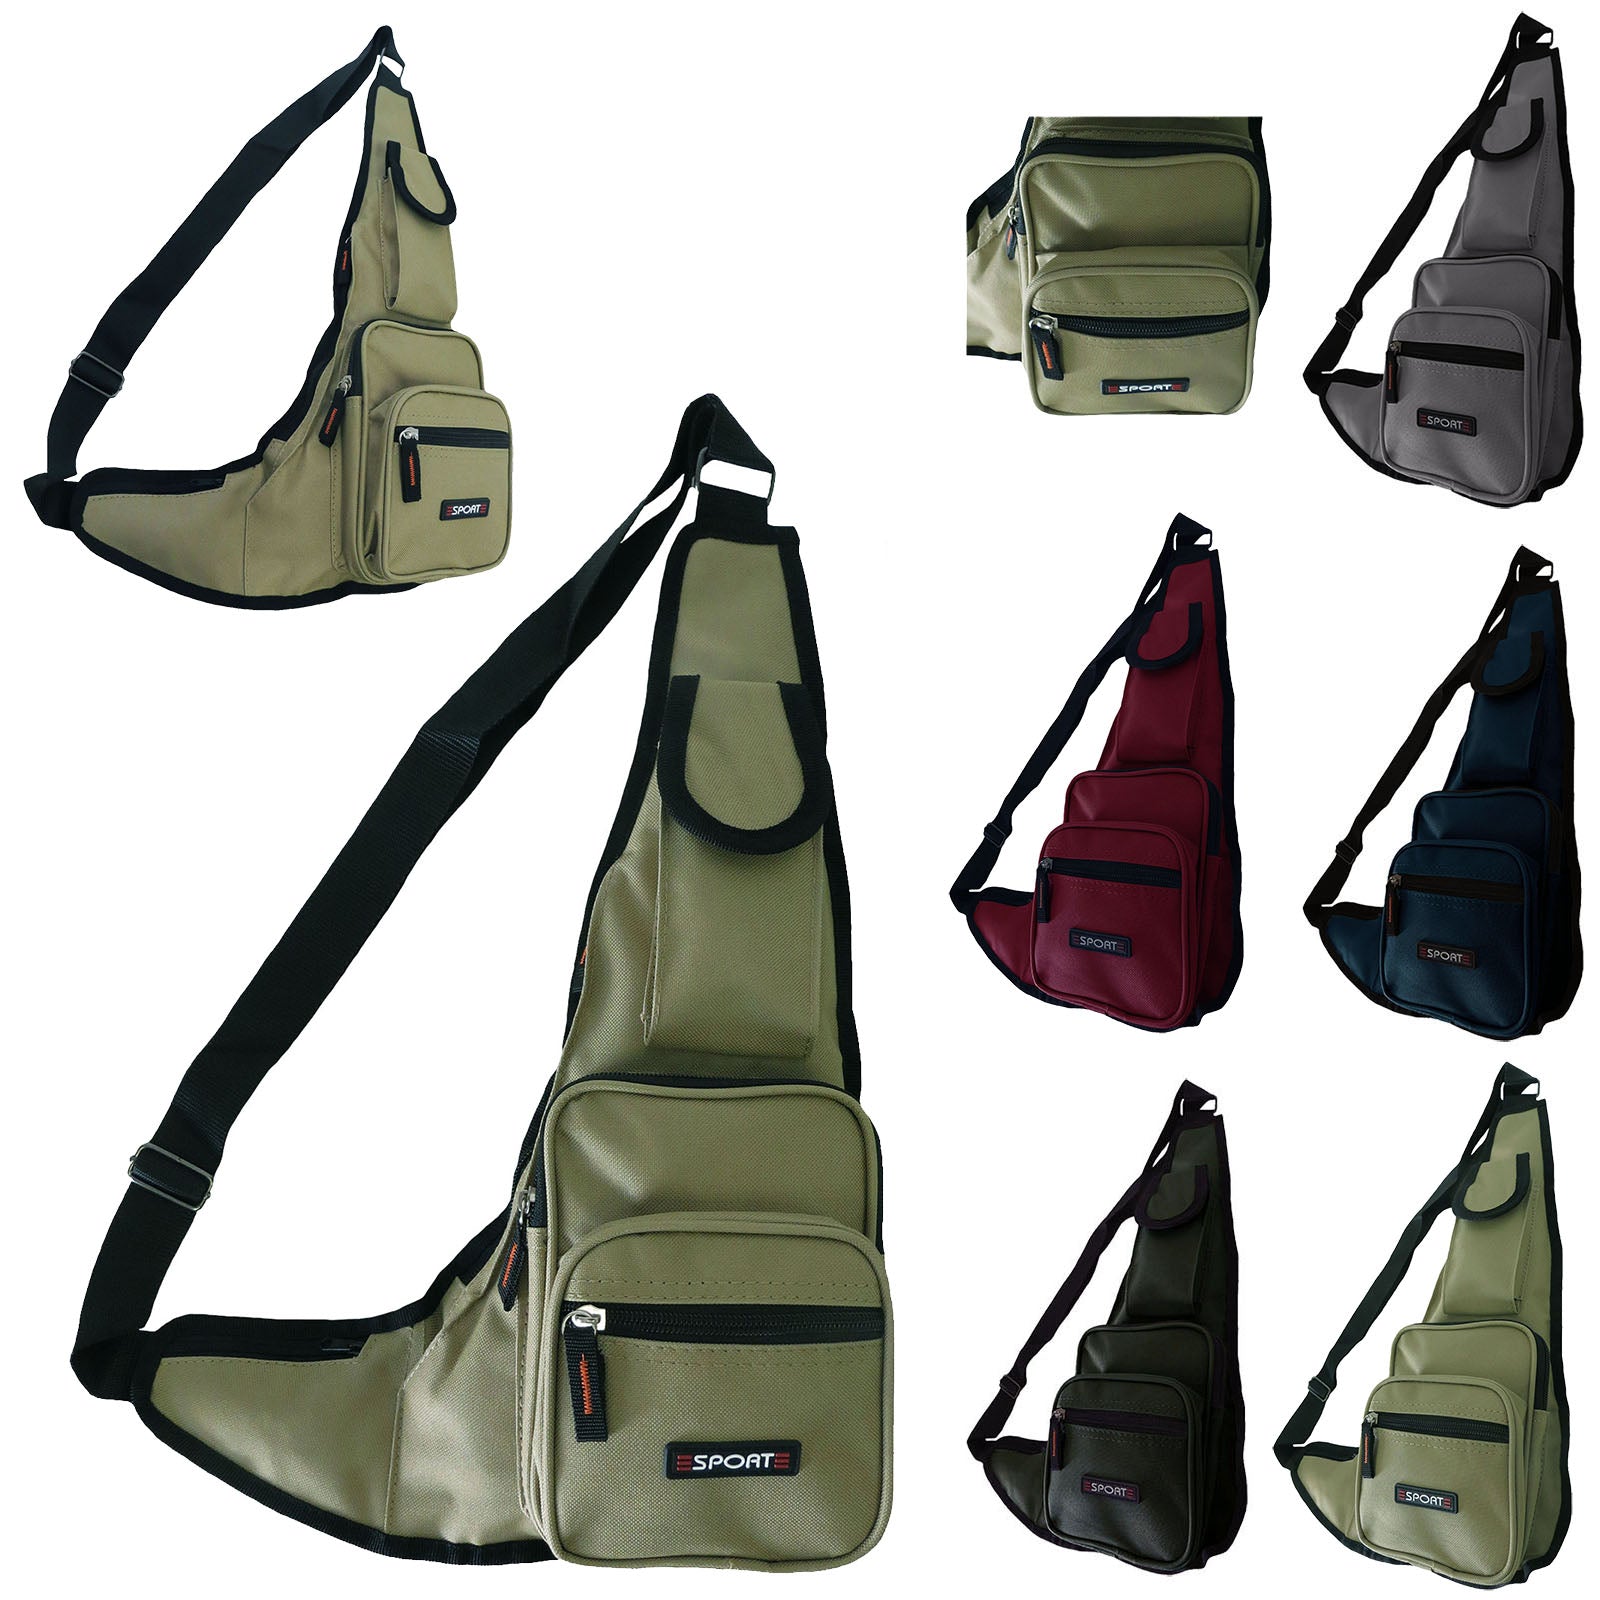 wholesale-messenger-sling-shoulder-bag-assorted-color-pack